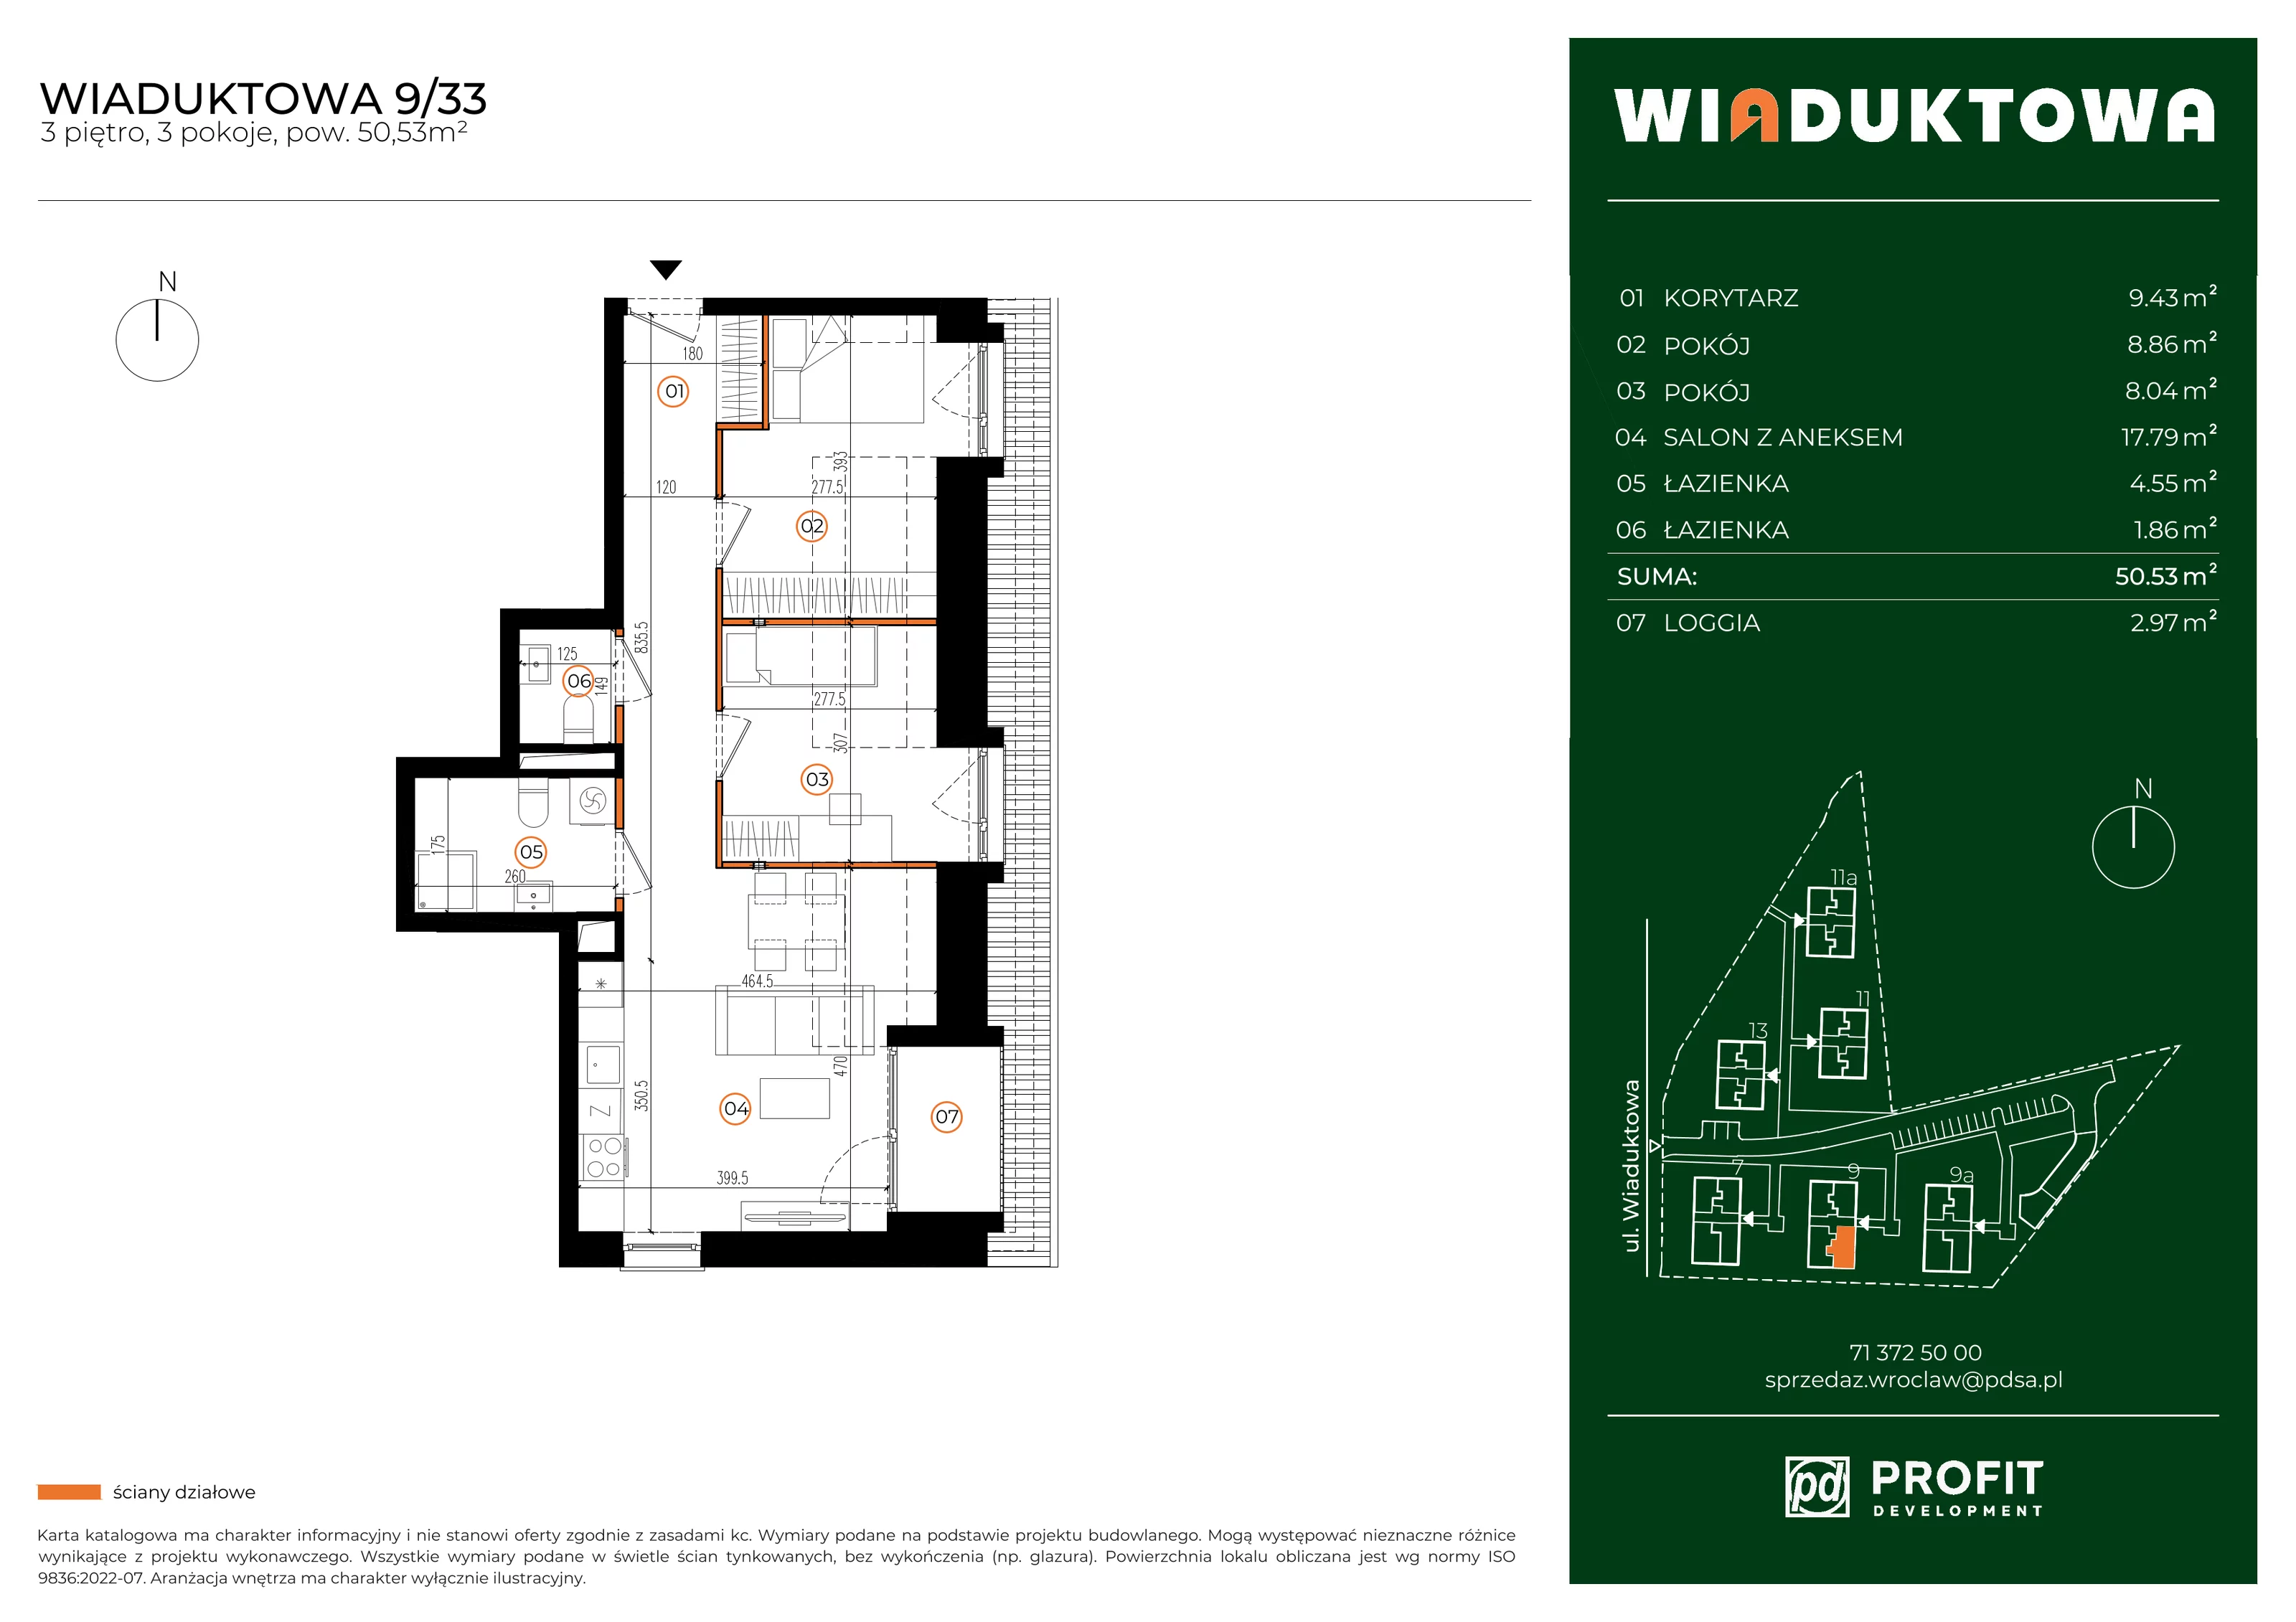 Mieszkanie 50,53 m², piętro 3, oferta nr WI/9/33, Wiaduktowa, Wrocław, Krzyki-Partynice, Krzyki, ul. Wiaduktowa